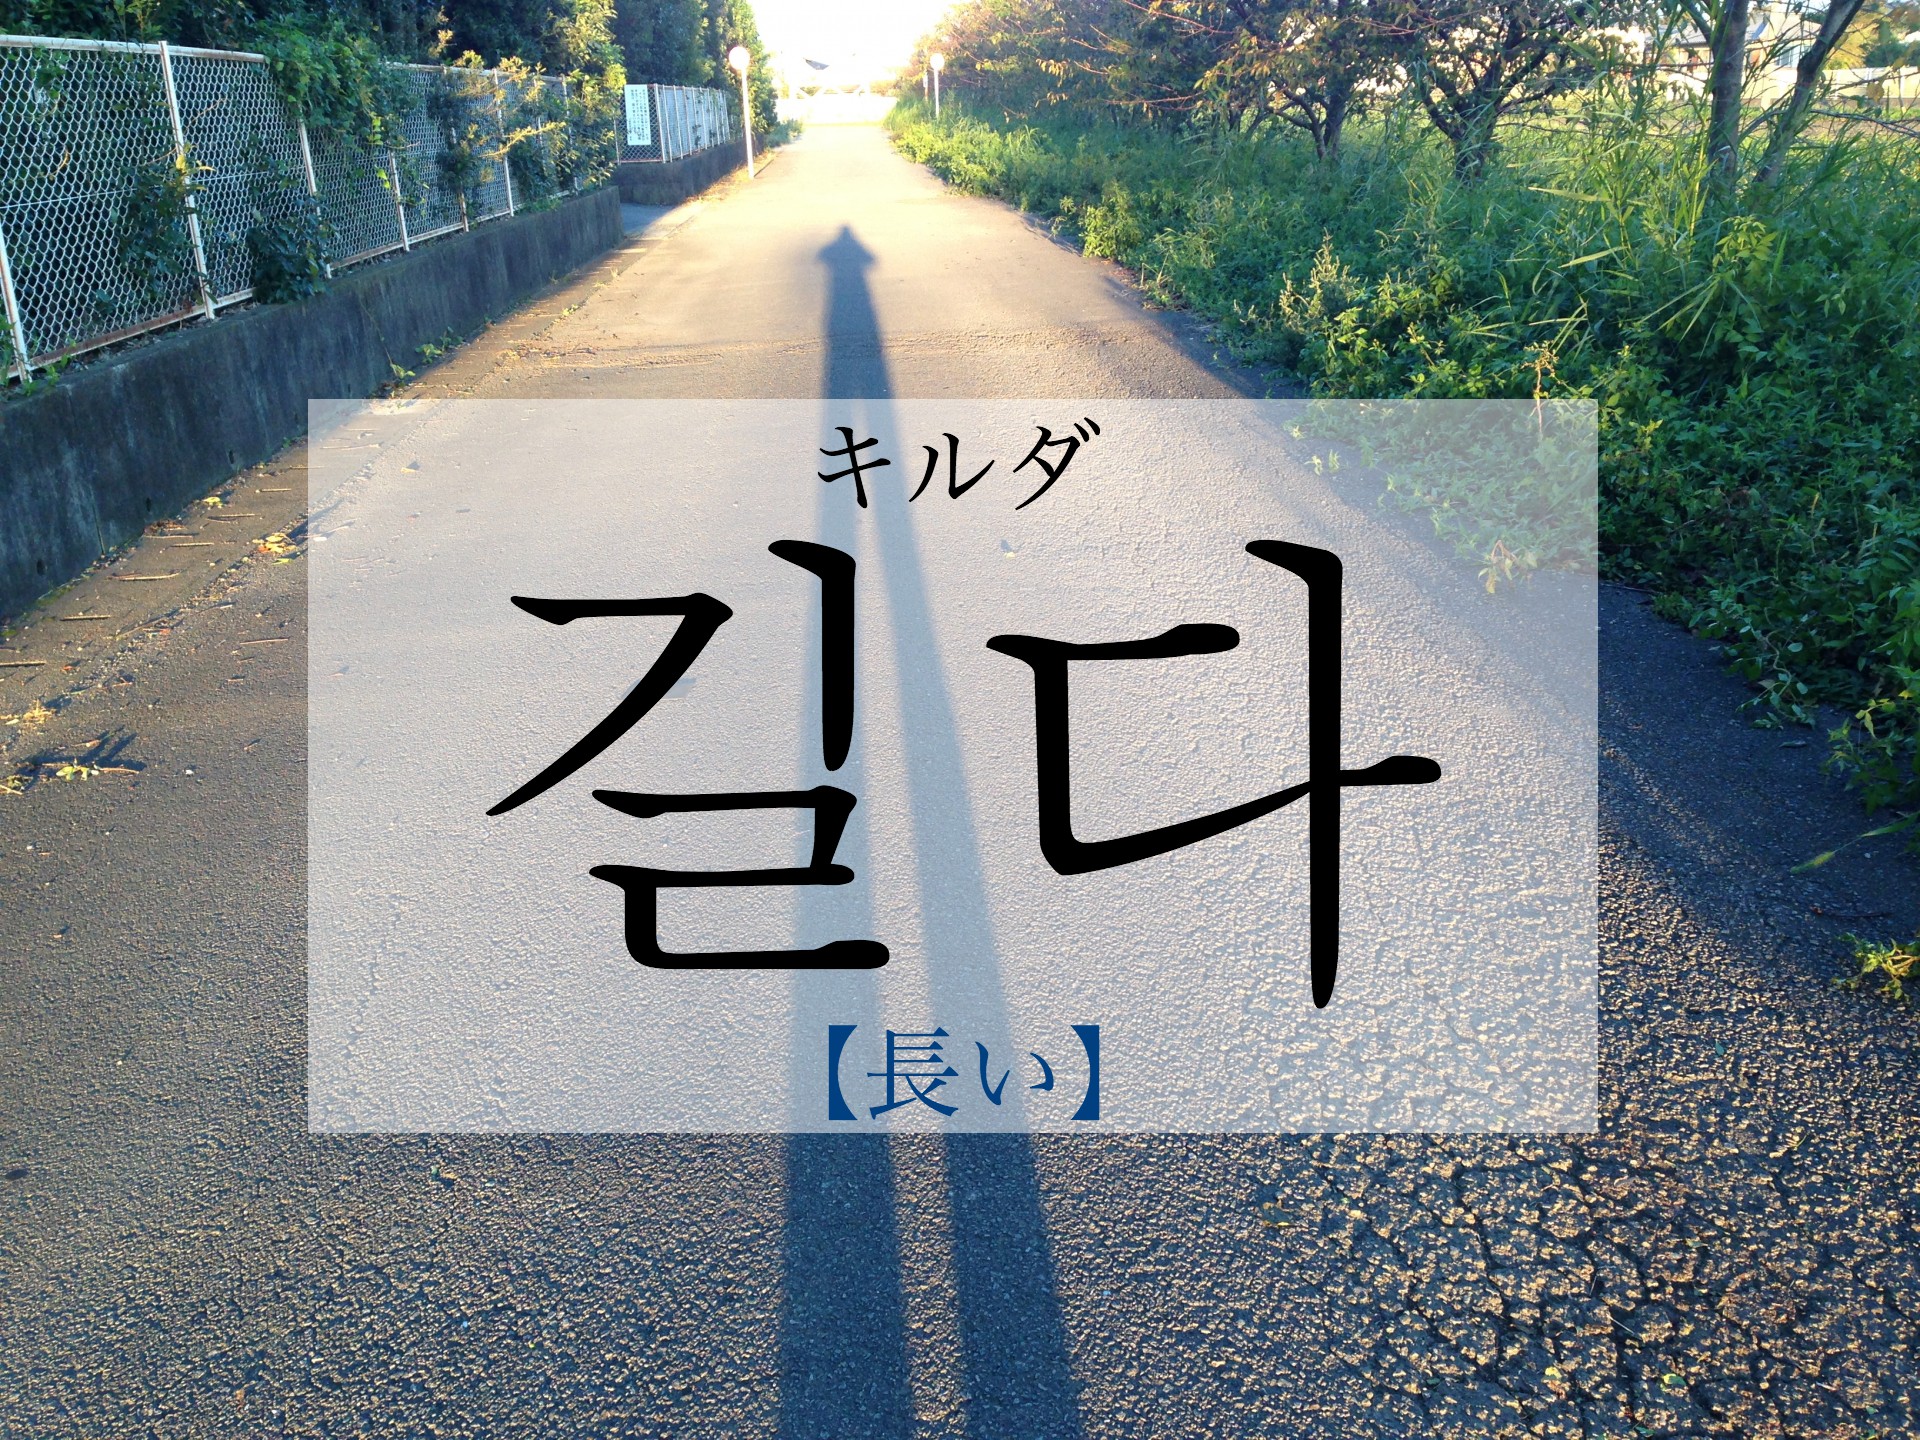 koreanword-long